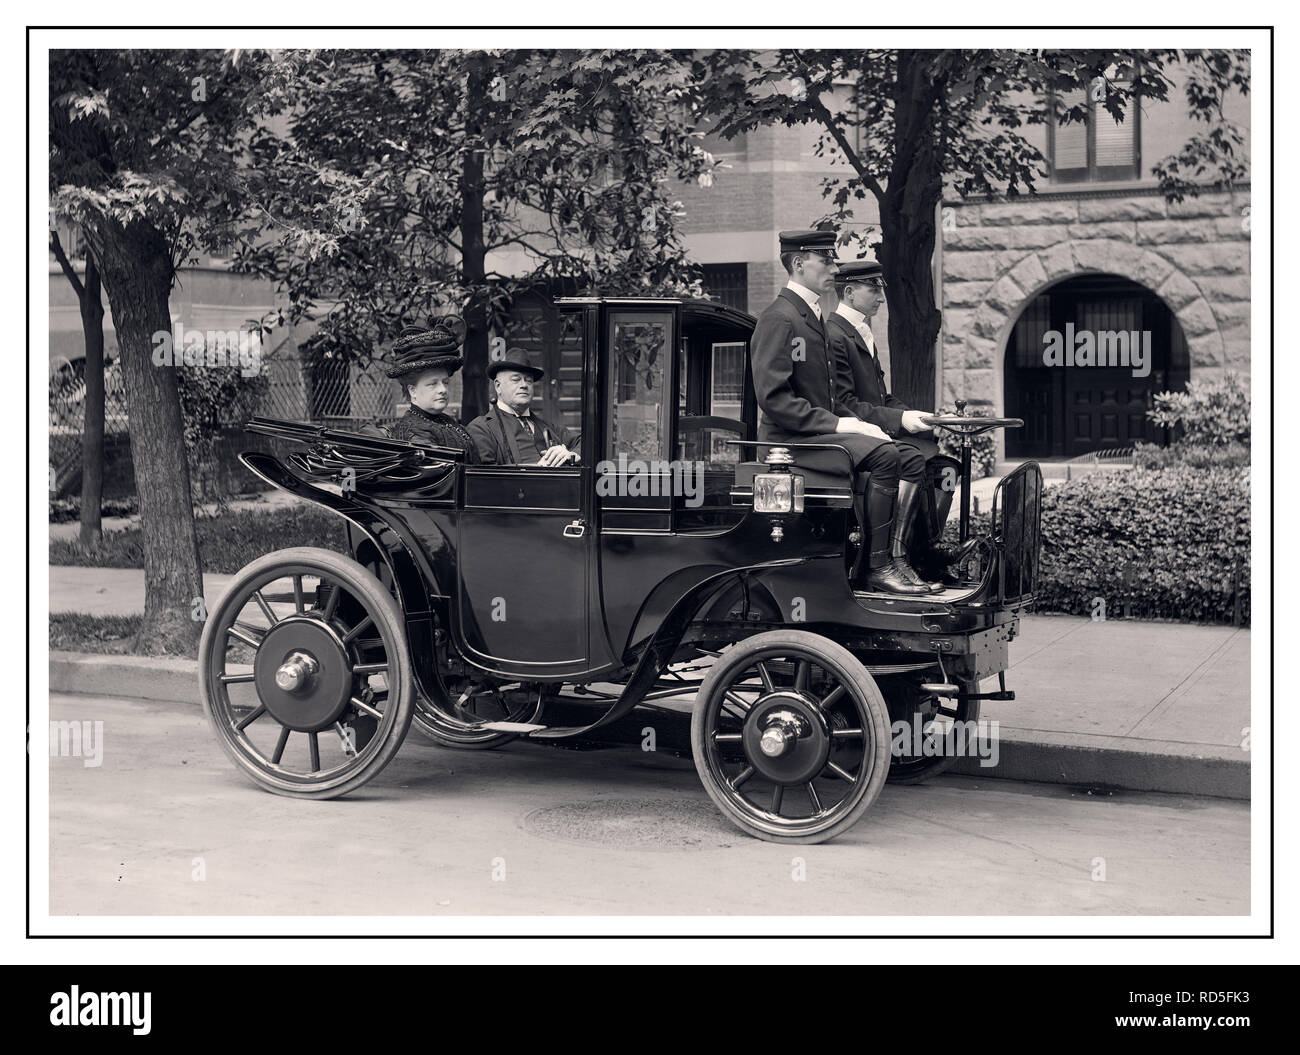 VOITURE ÉLECTRIQUE Vintage 1906 KRIEGER American automobile avec le sénateur George P. Wetmore de Rhode Island dans une voiture Krieger, vers 1906. Le sénateur Wetmore est de retour avec sa femme. Un conducteur et un repose-pied se trouvent devant le véhicule. Rhode Island États-Unis Banque D'Images